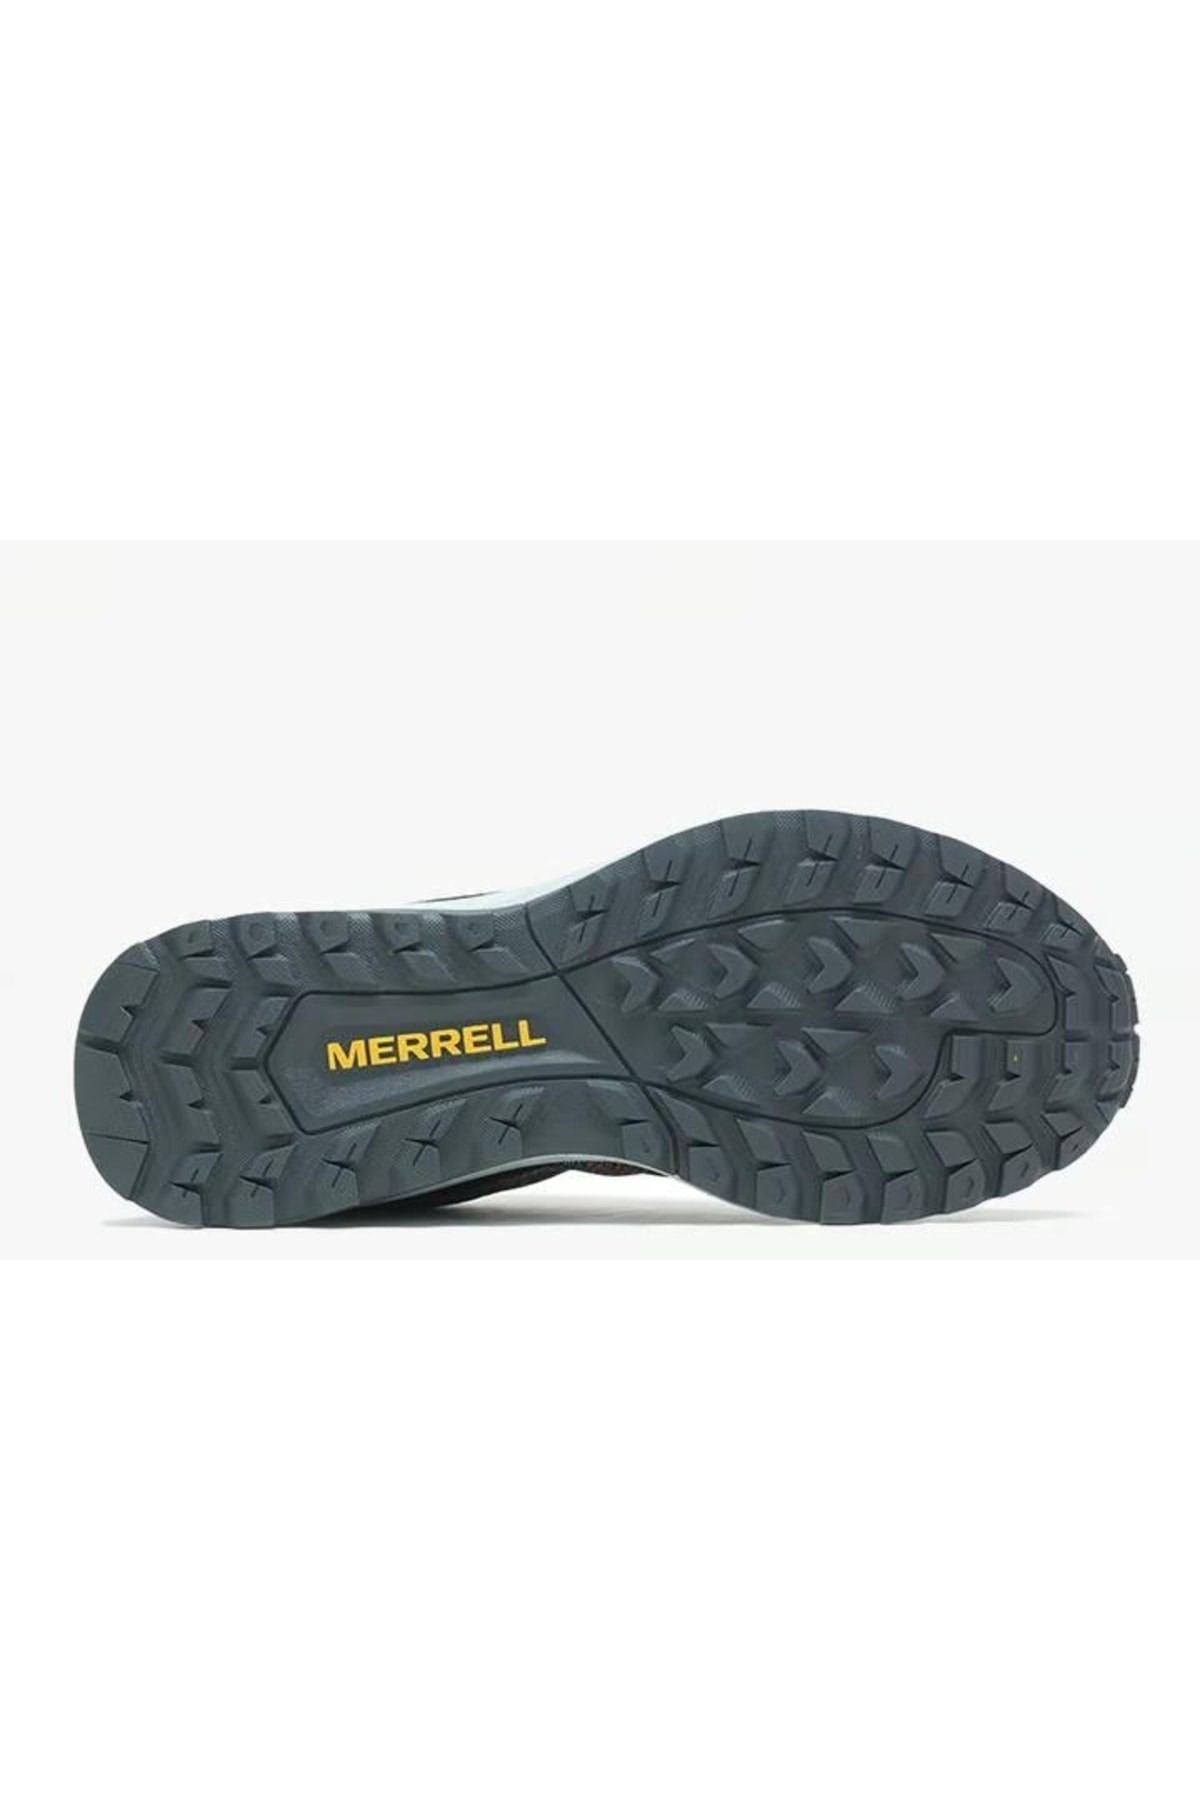 Merrell Fly Strike Kadın Koşu Ayakkabısı Siyah Fuşya J067444